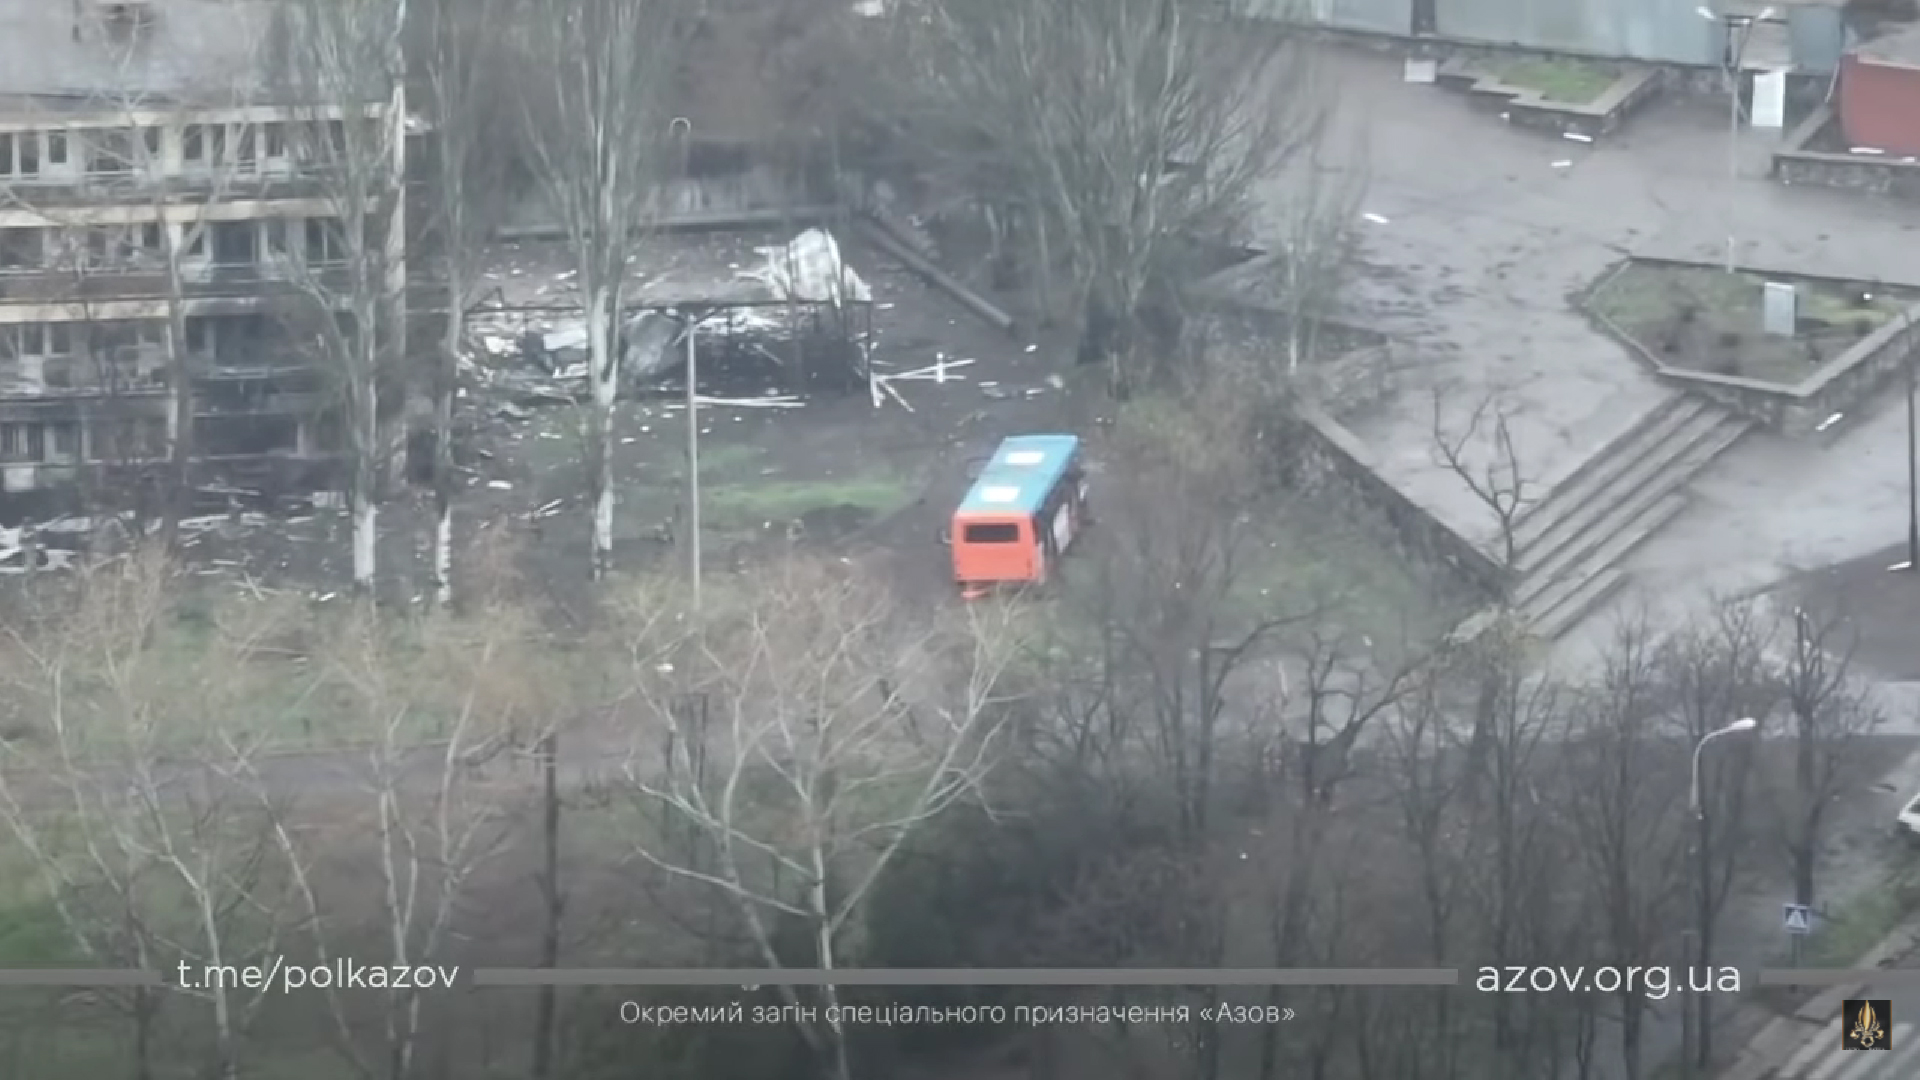 Zelenski anunță începutul ofensivei ruse în Donbas: Vom lupta, oricât de mulţi soldaţi ruşi sunt aduşi aici. Ne vom apăra